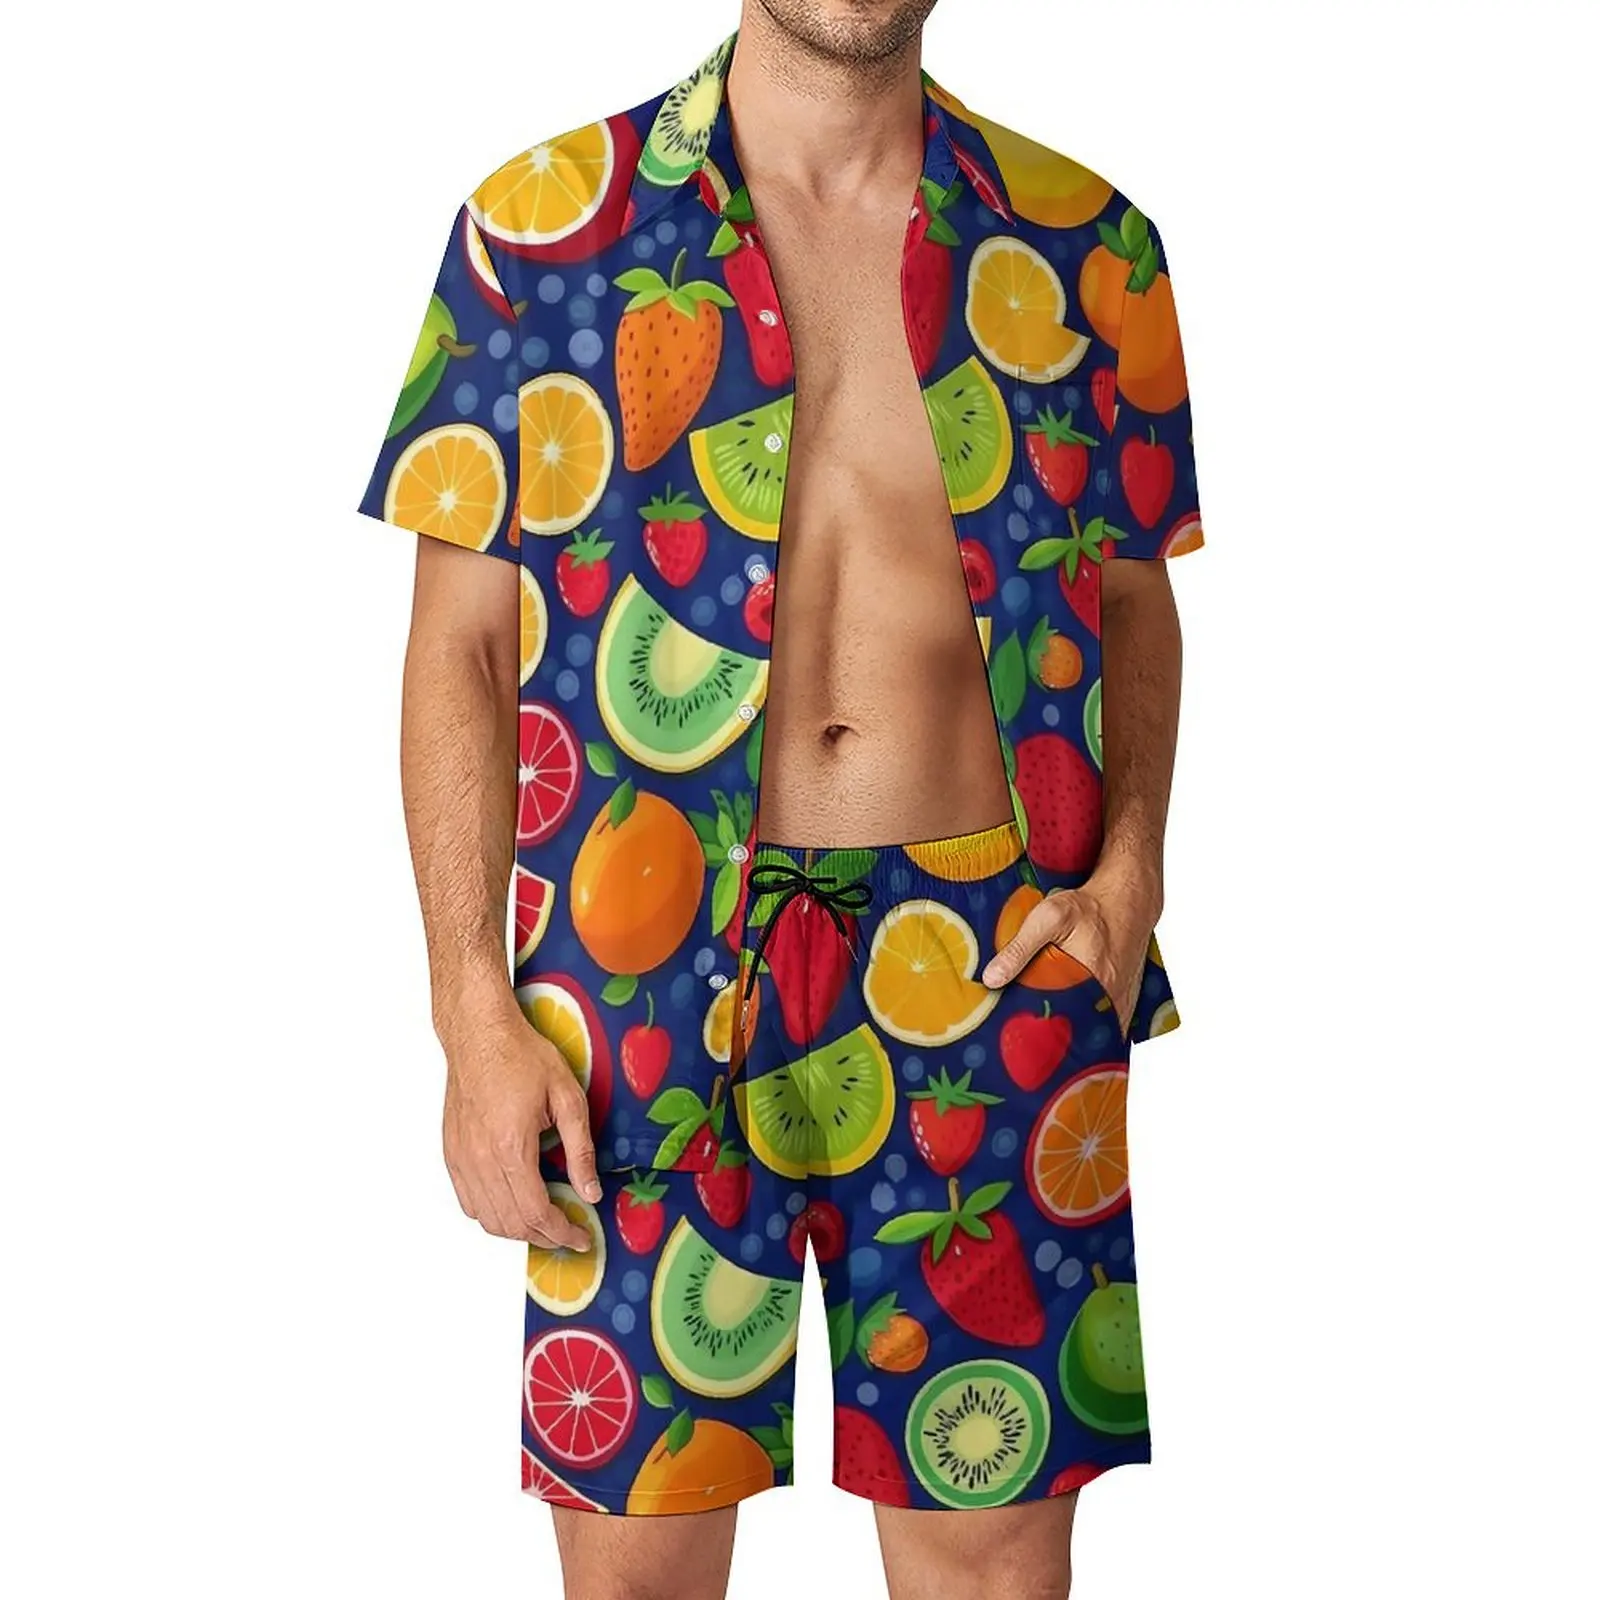 

Мужской пляжный комплект из шорт и рубашки, с принтом в виде фруктов